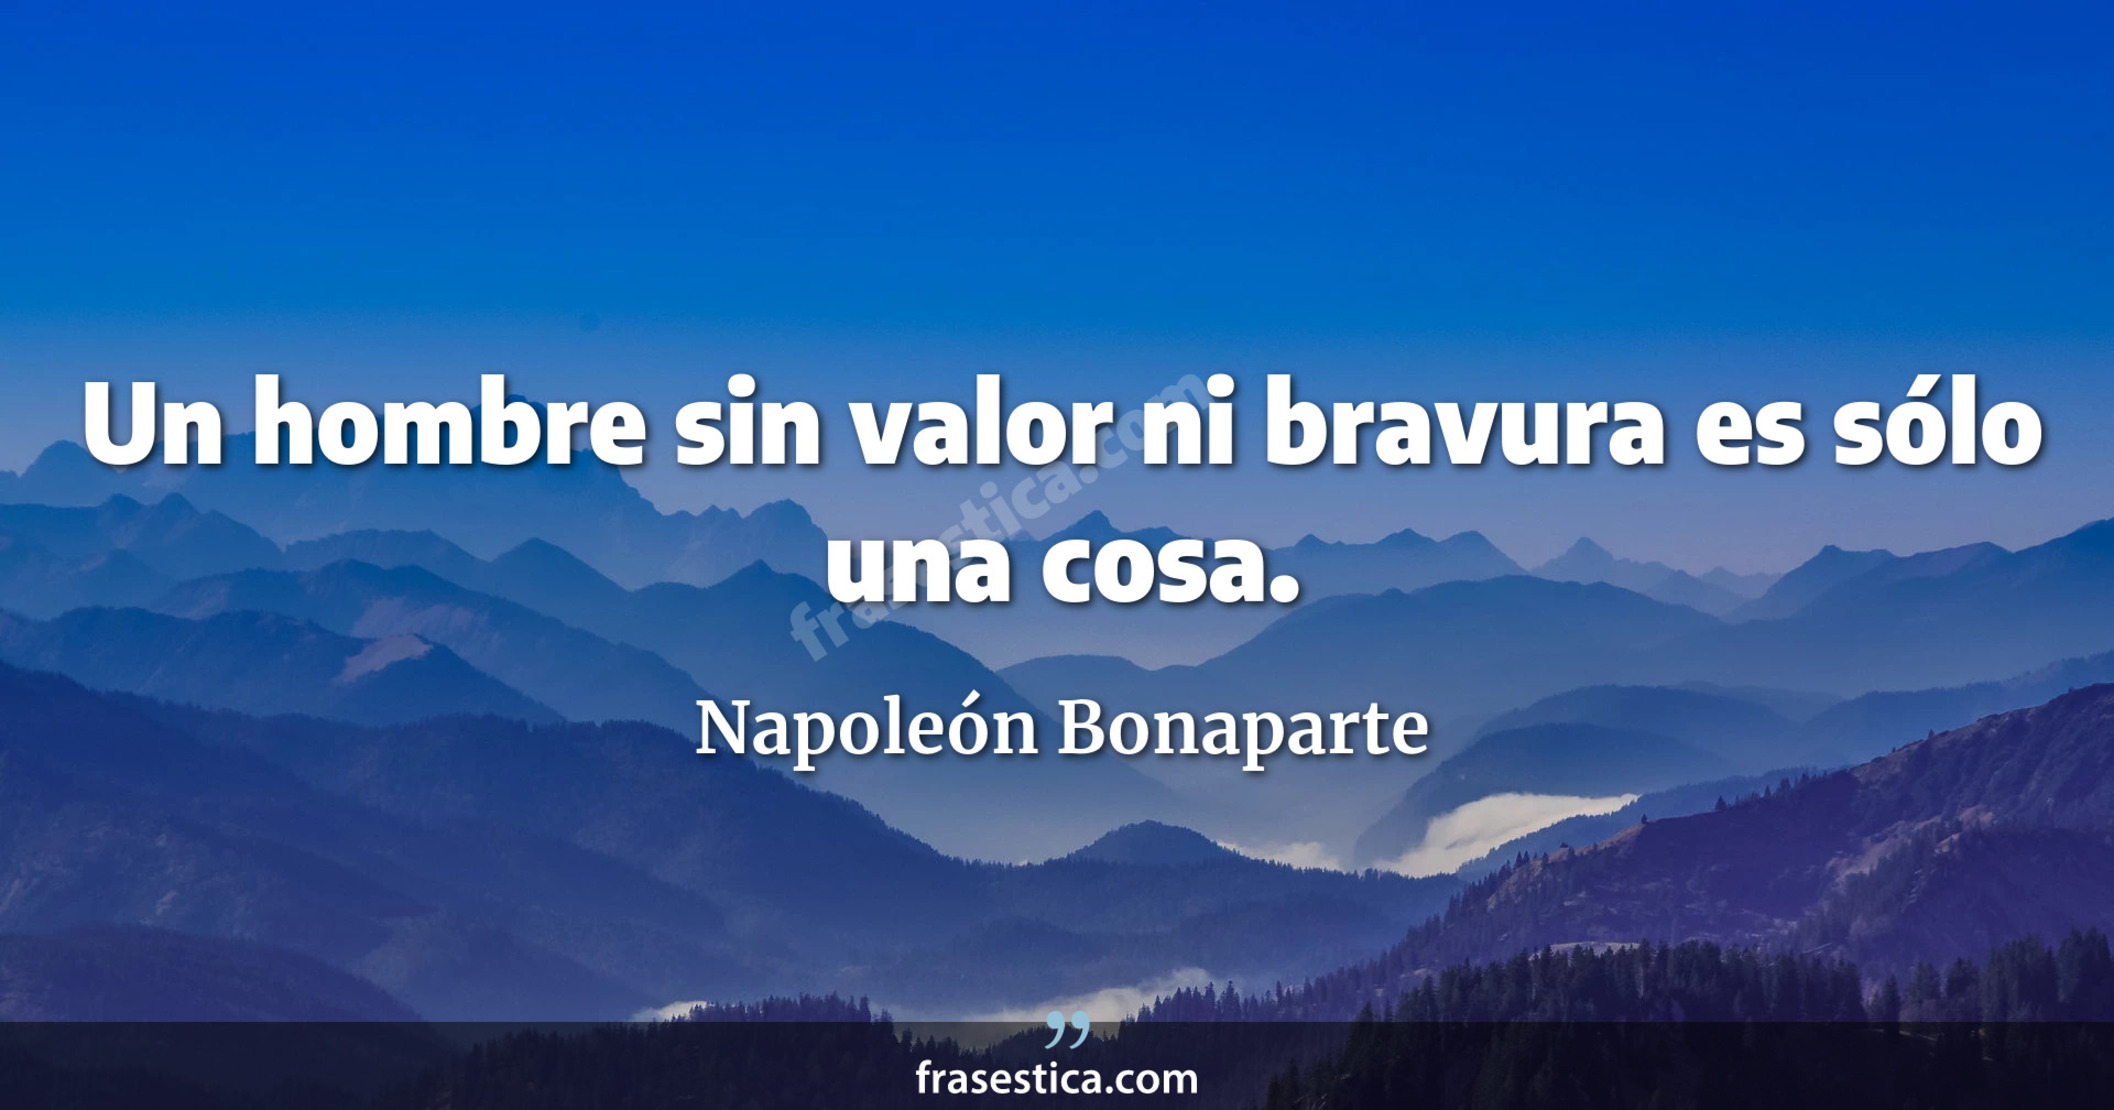 Un hombre sin valor ni bravura es sólo una cosa. - Napoleón Bonaparte